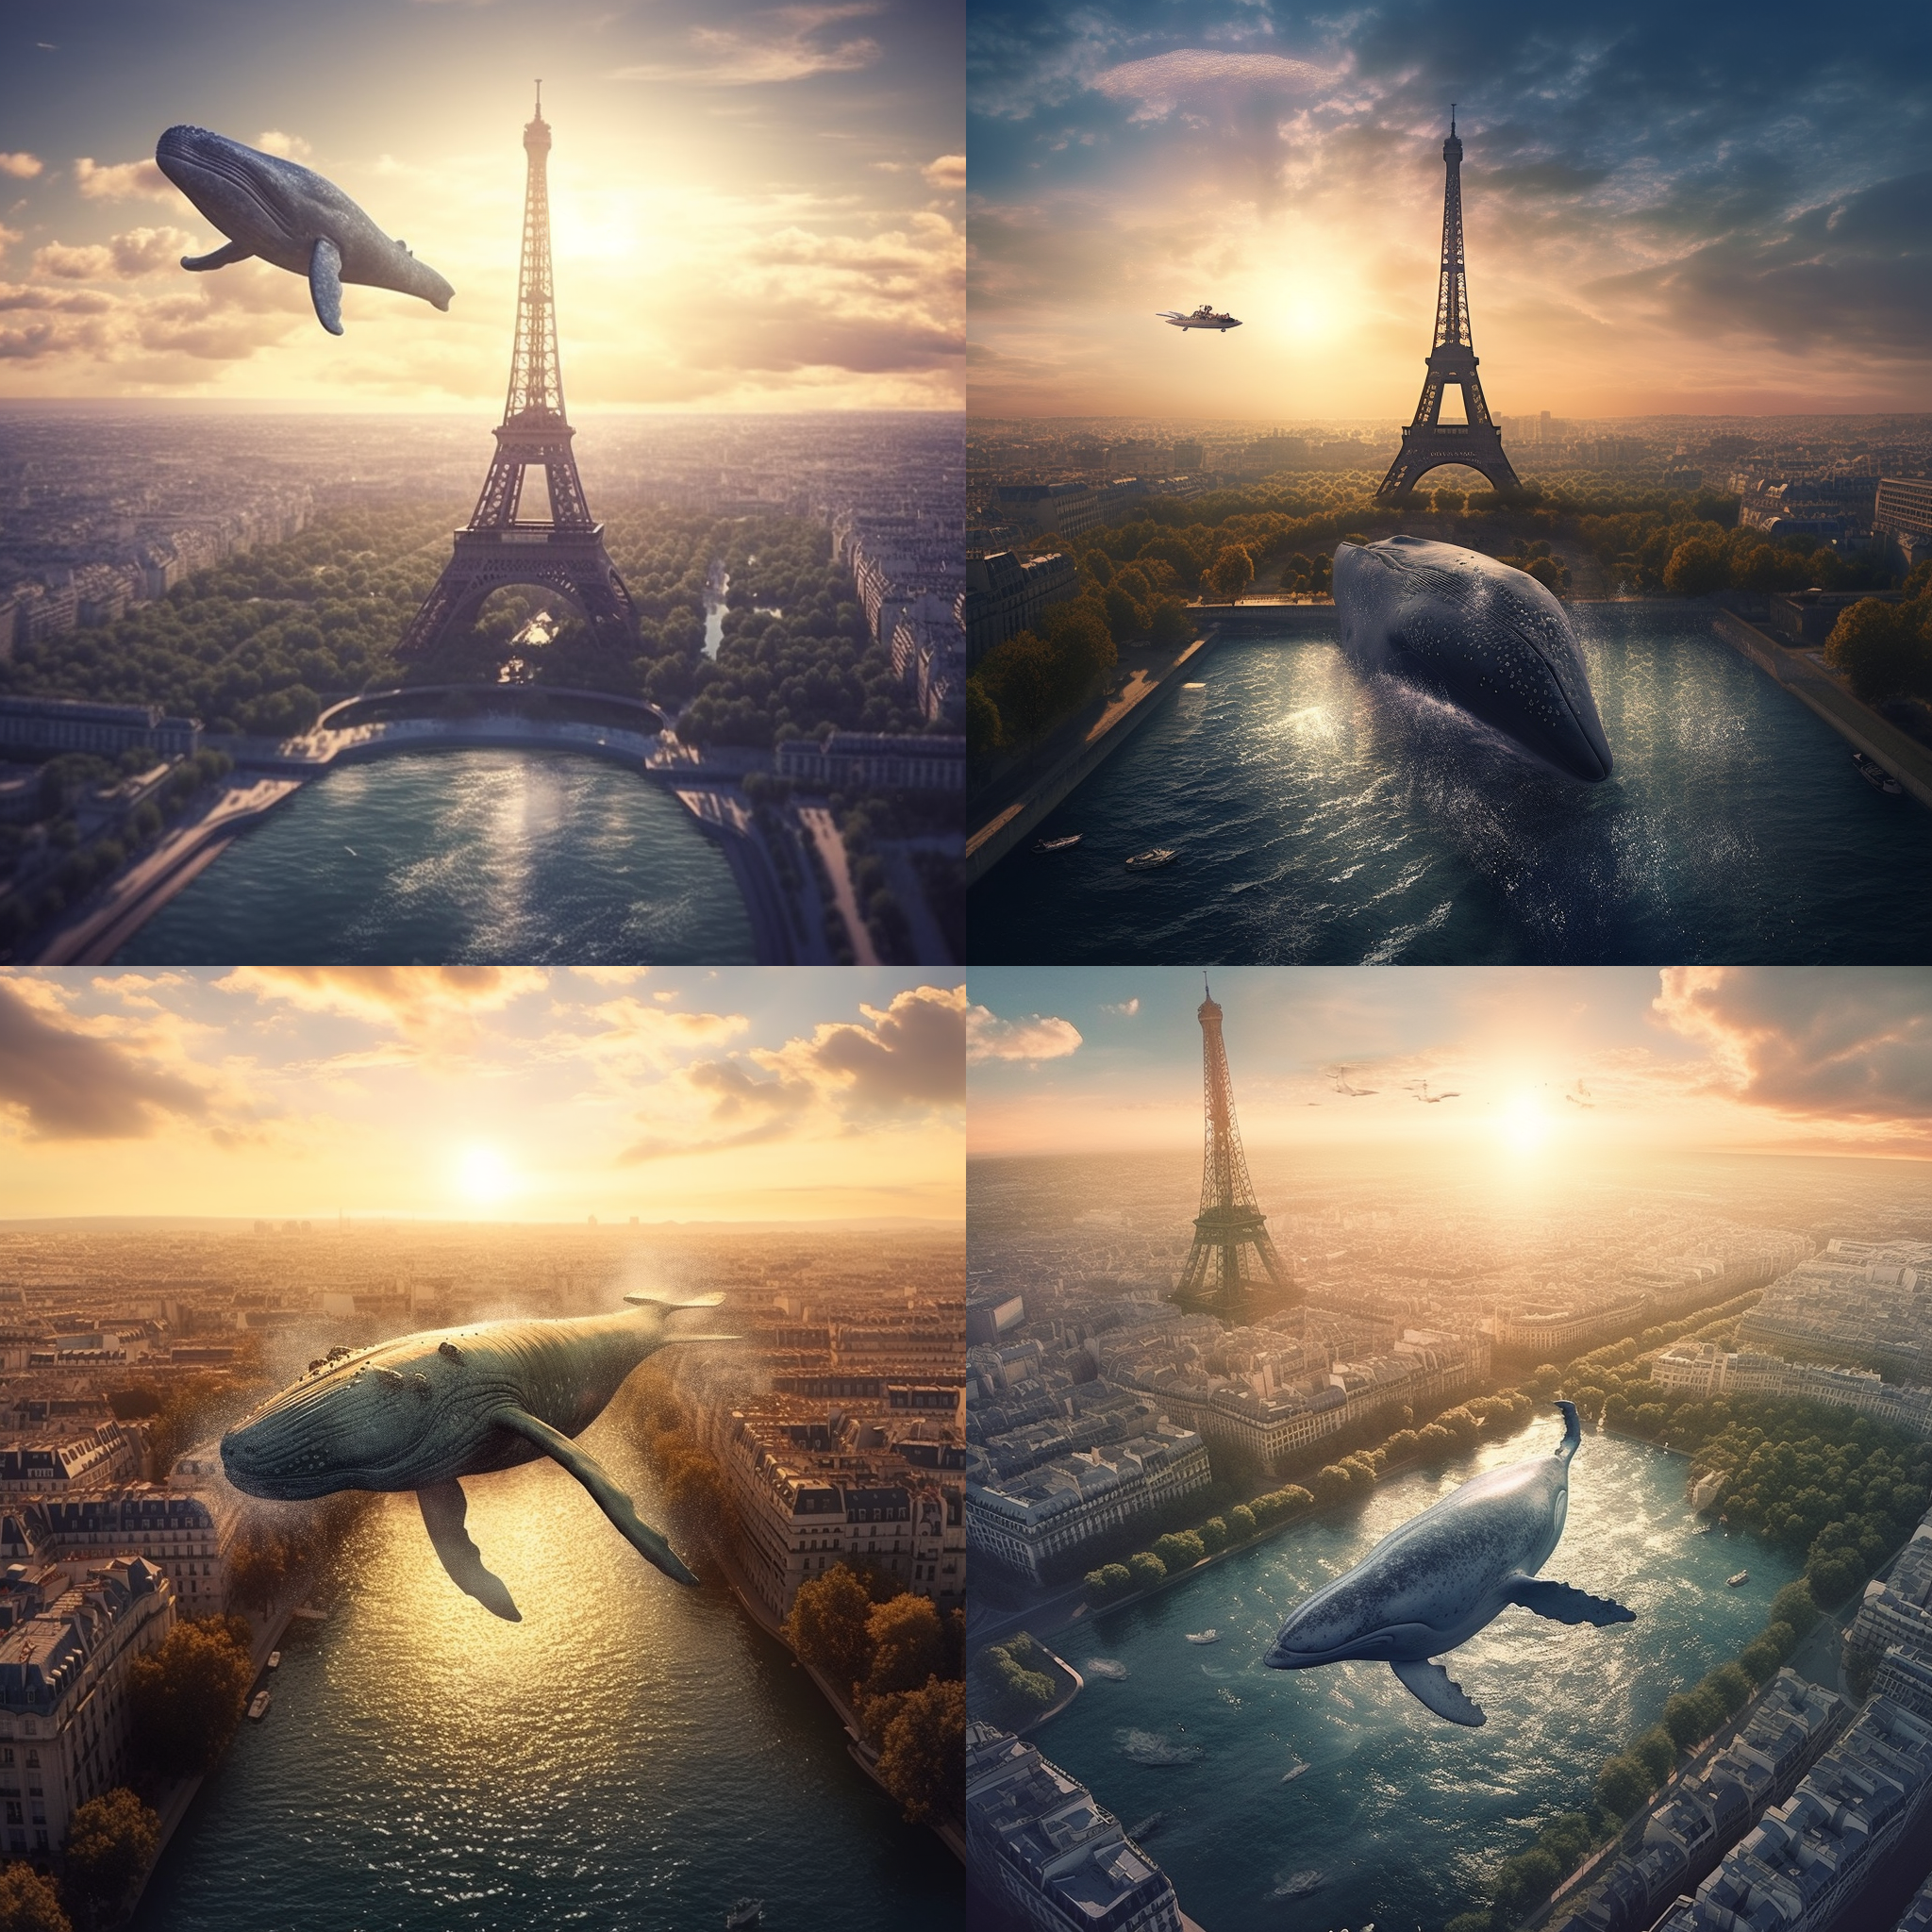 Test réalisé sur Midjourney avec le texte suivant : a whale swimming above Paris and the Eiffel Tower with a super sun / hyper realistic photo